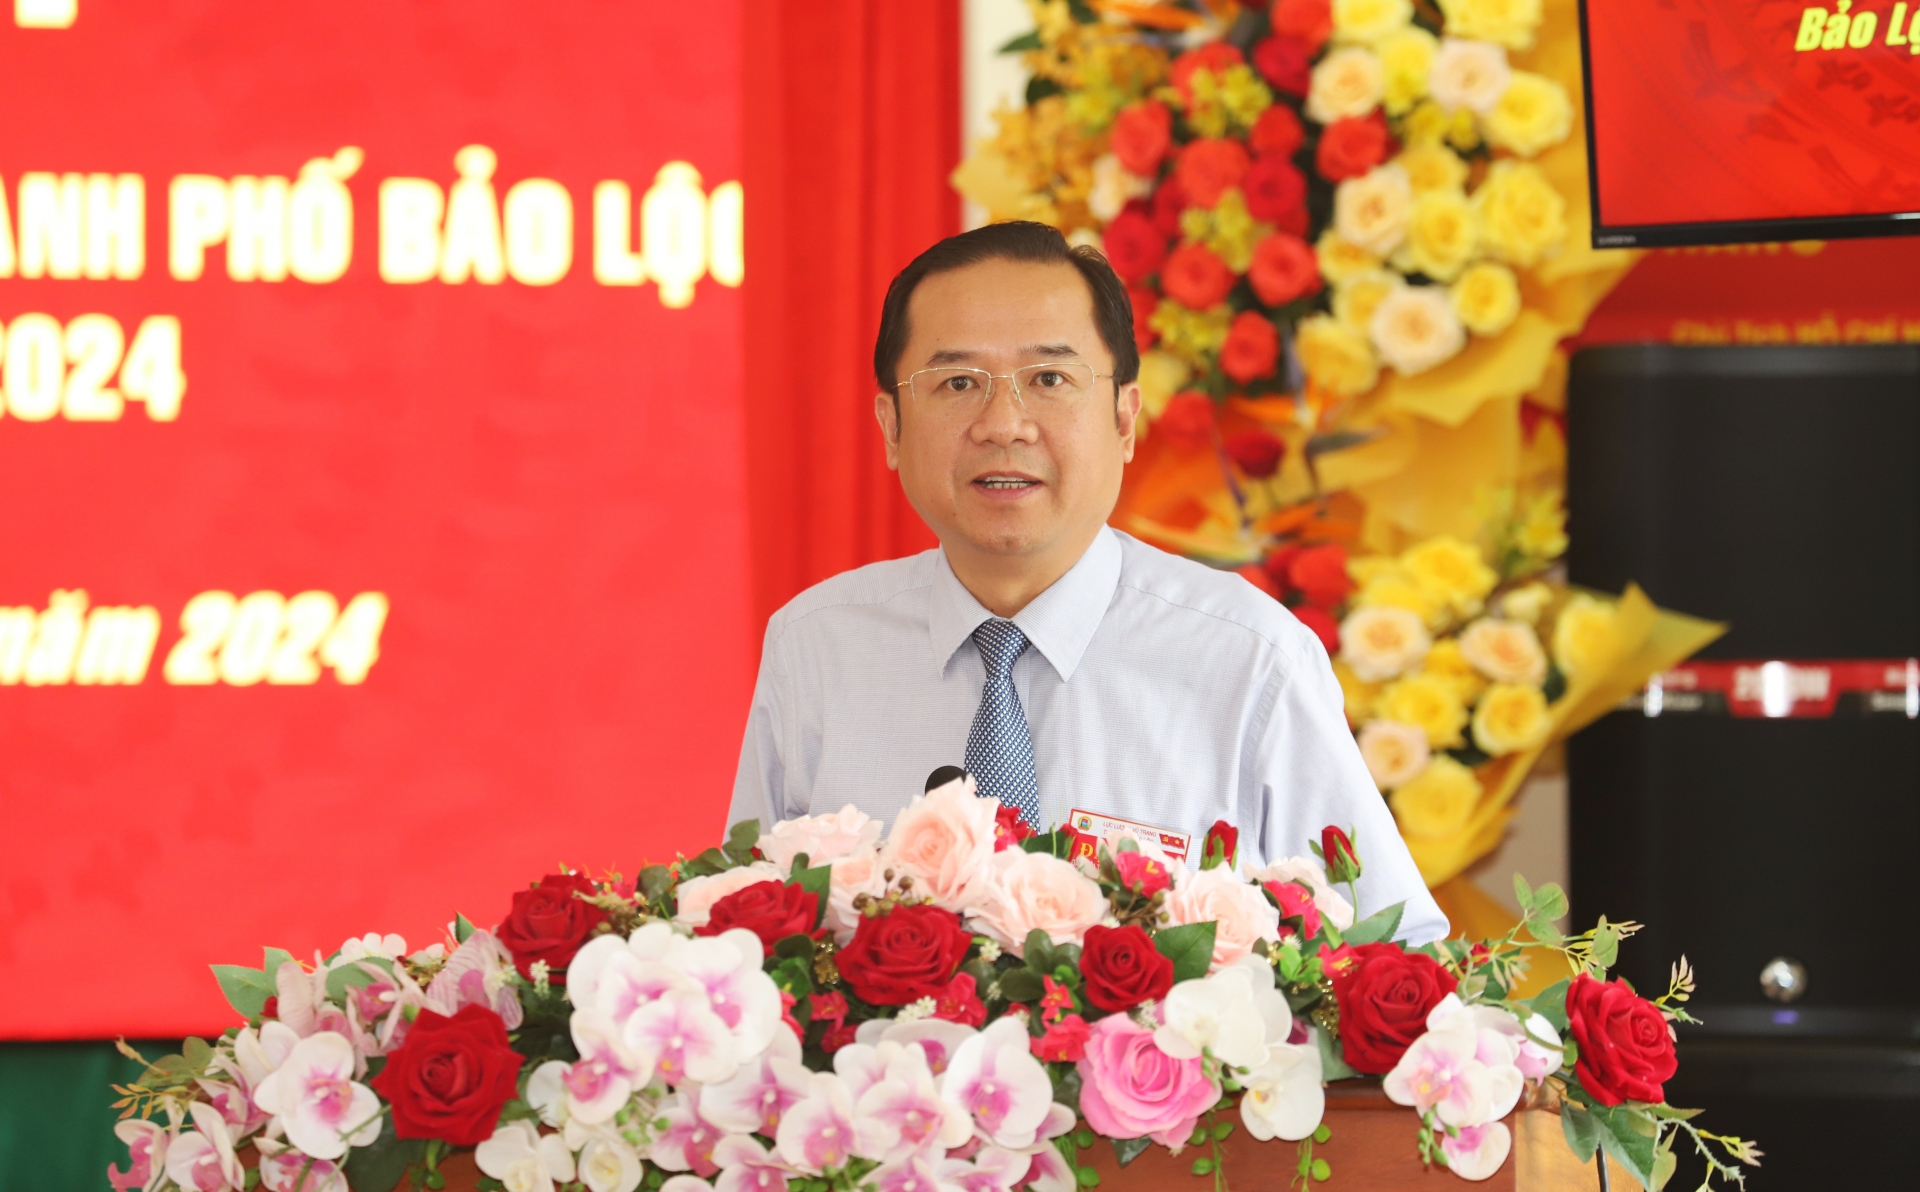 Đồng chí Tôn Thiện Đồng - Ủy viên Ban Thường vụ Tỉnh ủy, Bí thư Thành ủy Bảo Lộc phát biểu chỉ đạo tại Đại hội